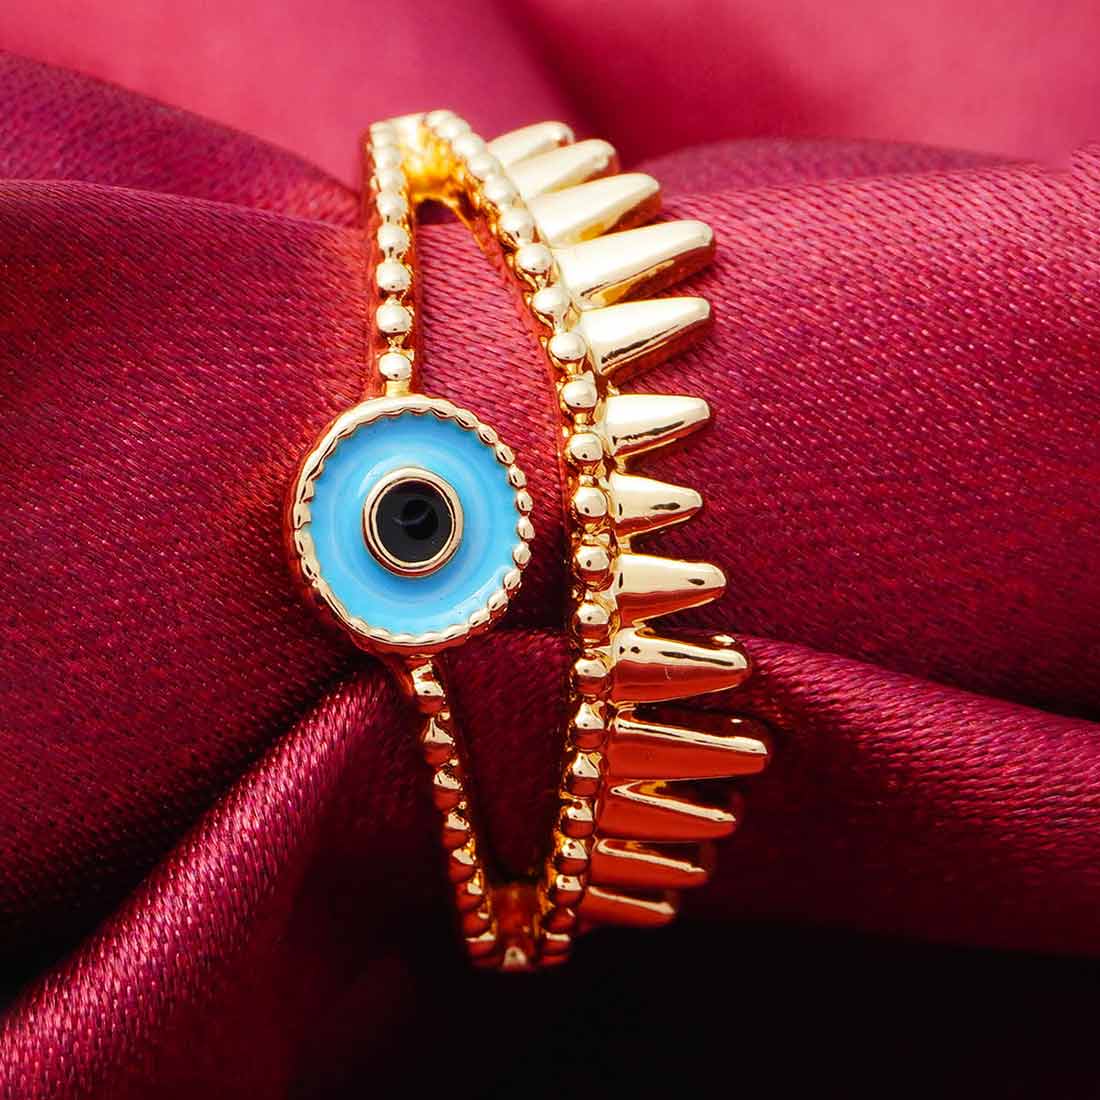 Evil Eye Ring in Gold
